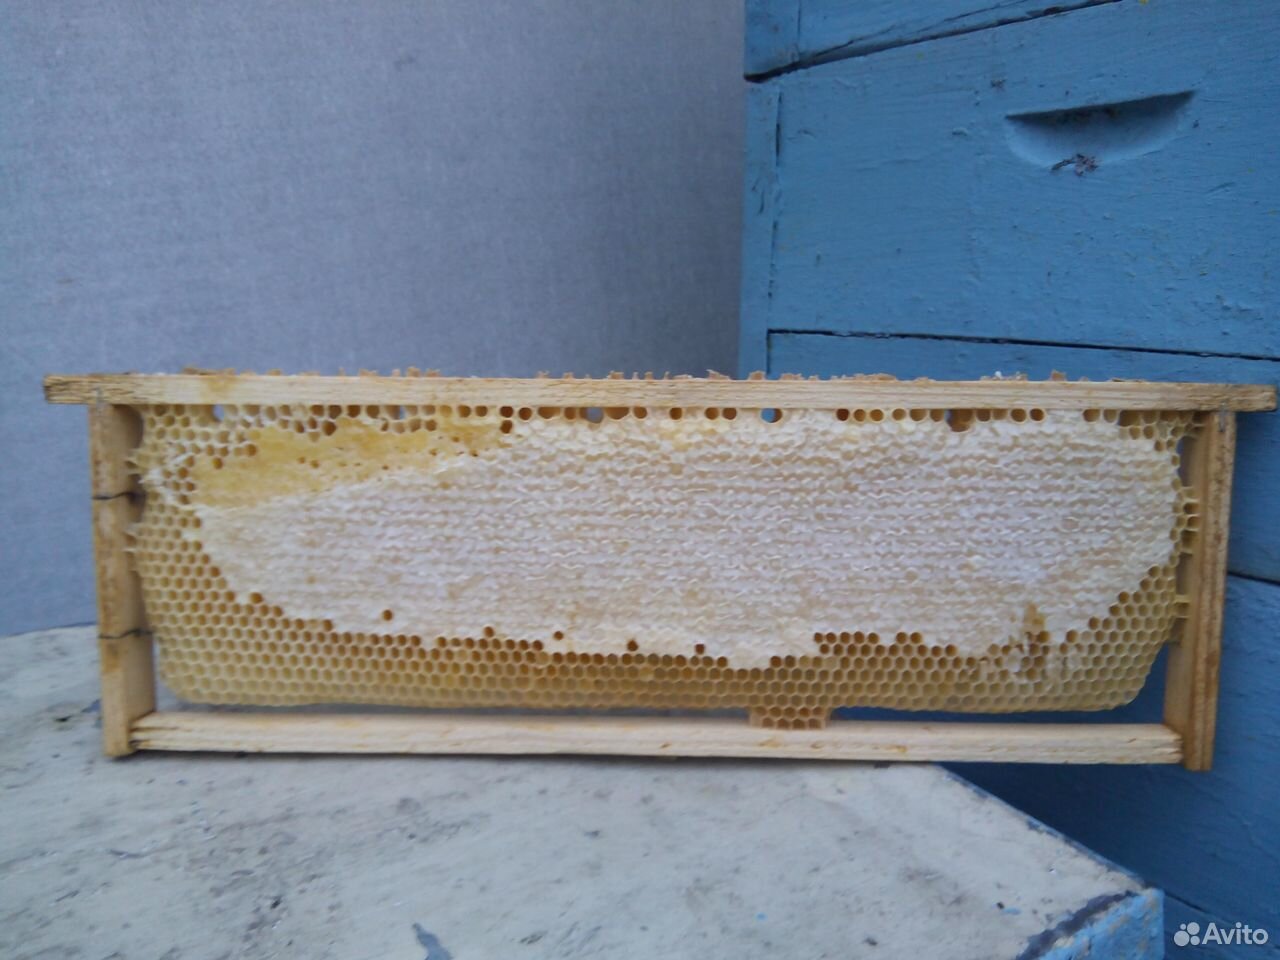 Рамки для пчёл | Взгляд на вещи